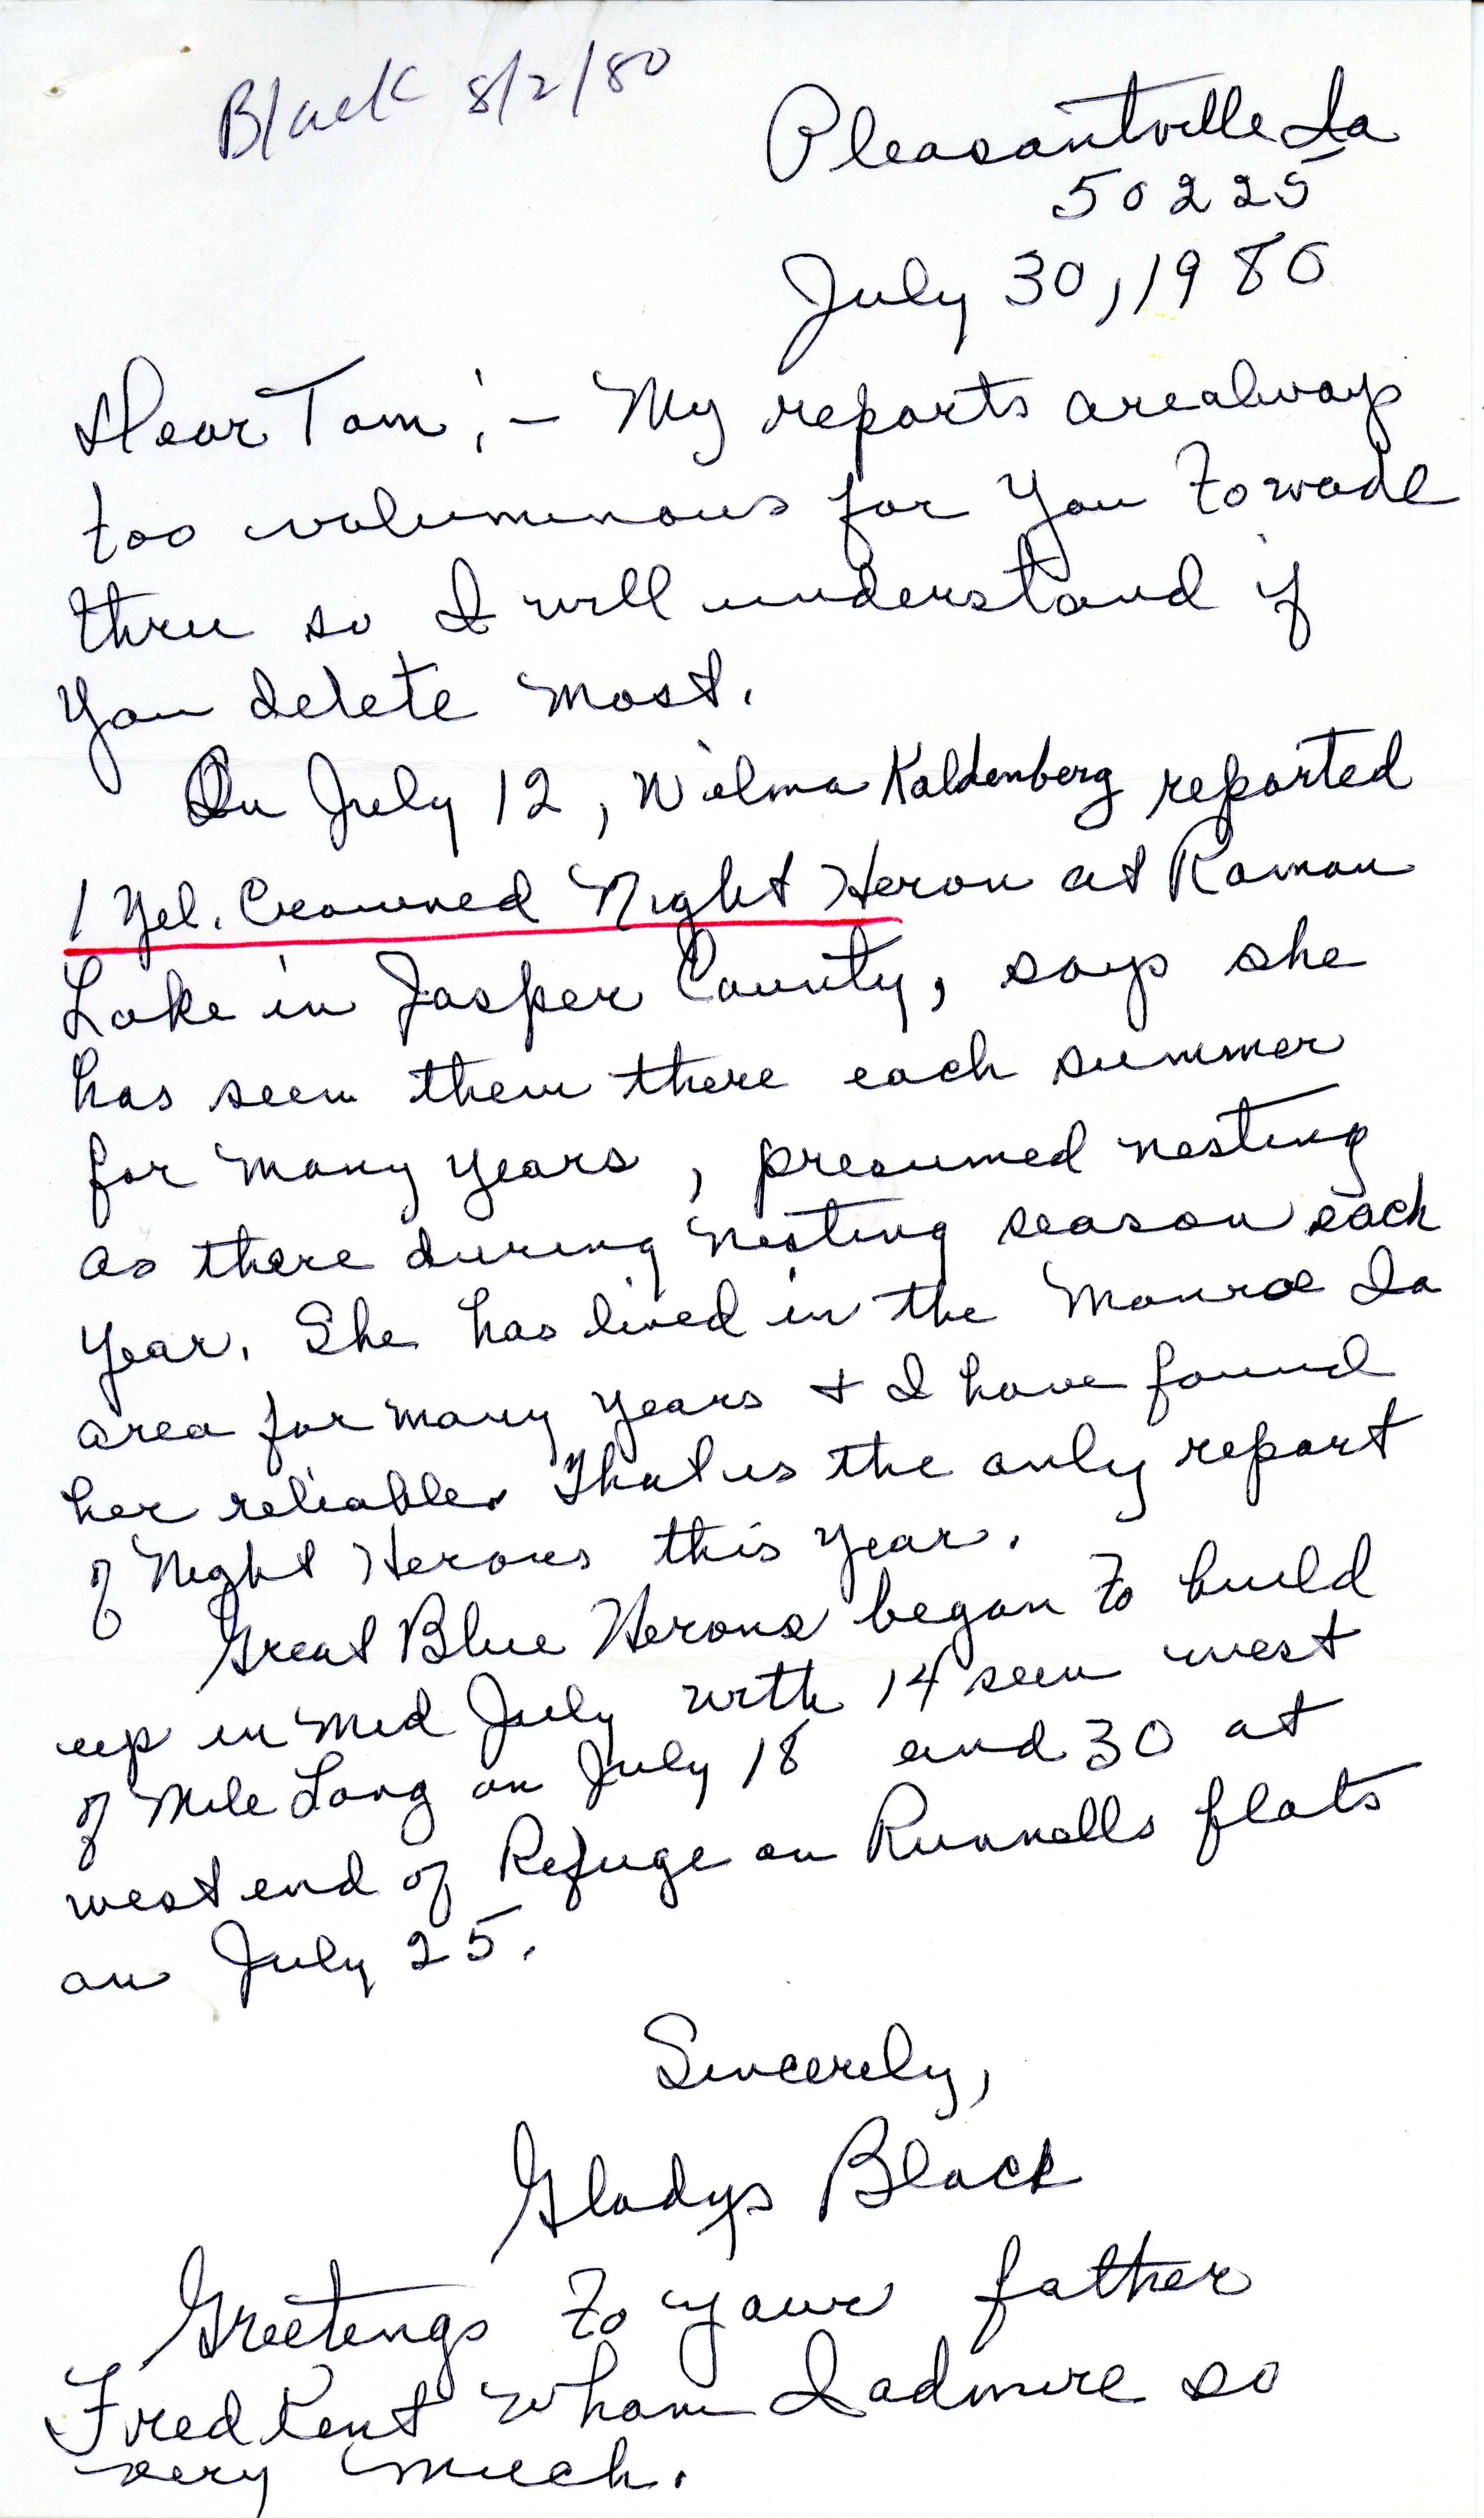 Gladys Black letter to Thomas H. Kent regarding bird sightings, July 30, 1980